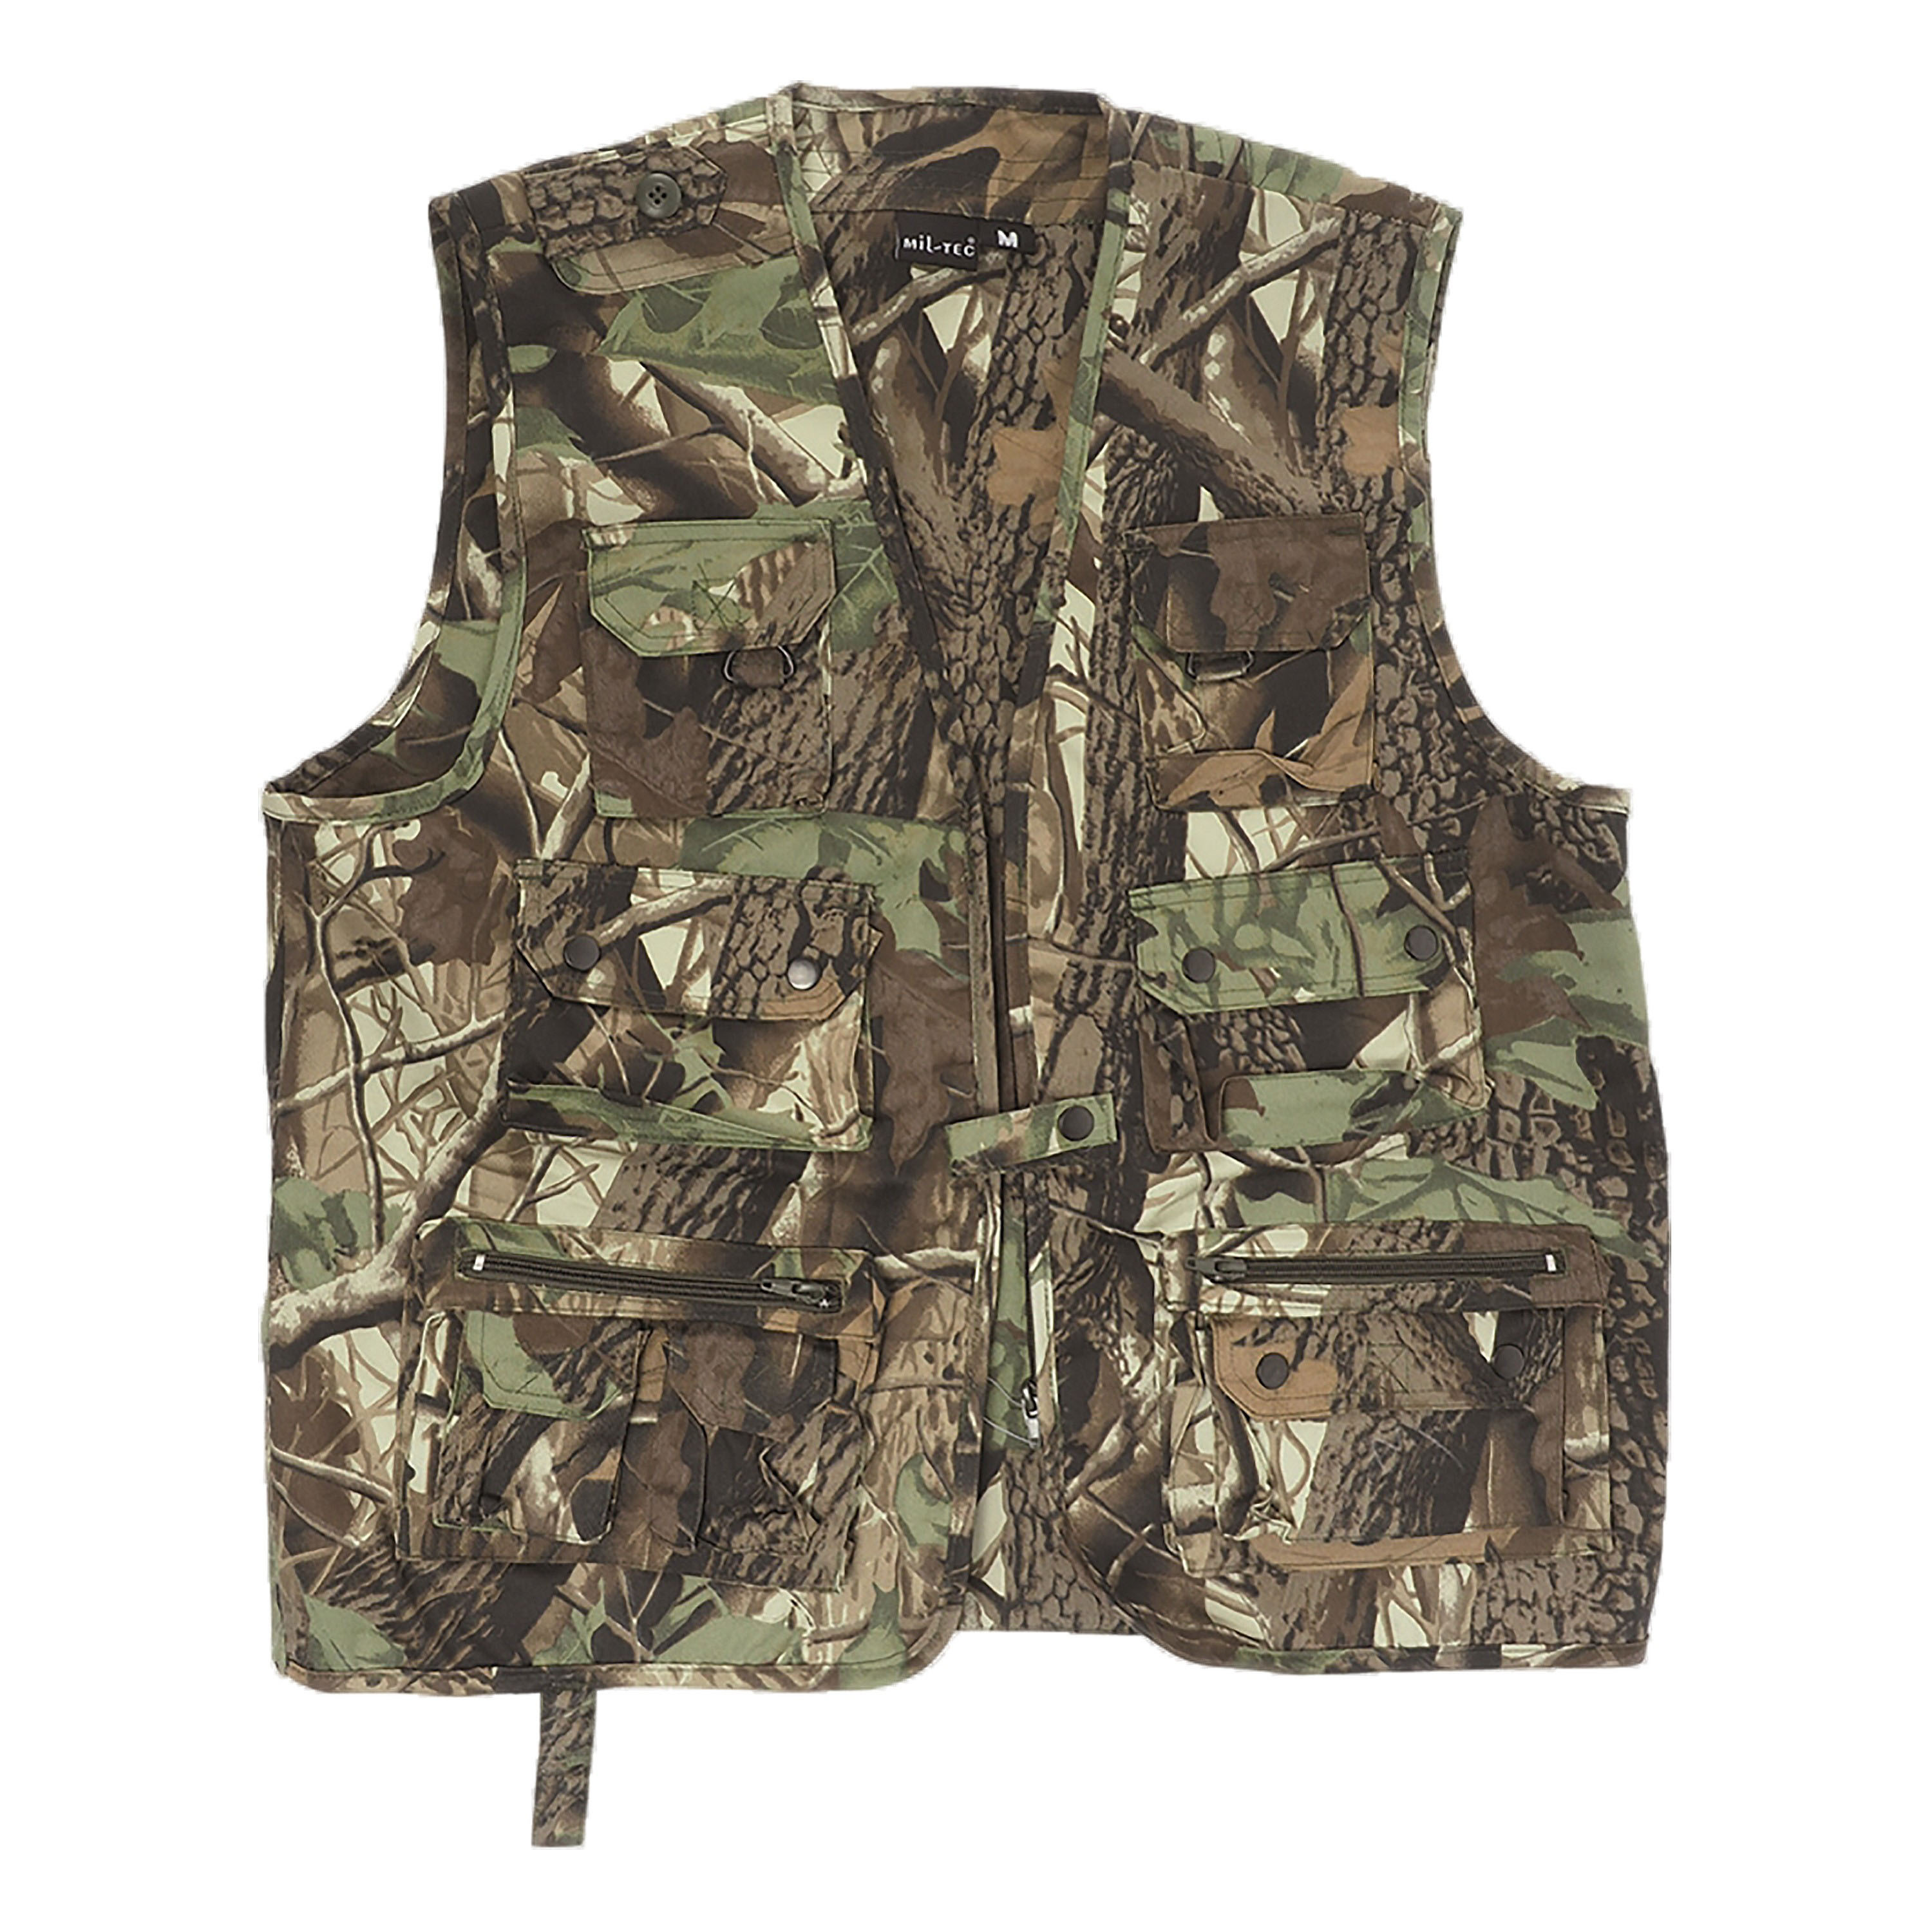 Hunting / Fishing Vest Hunting camo, Hunting / Fishing Vest Hunting camo, Vests, Jackets, Men